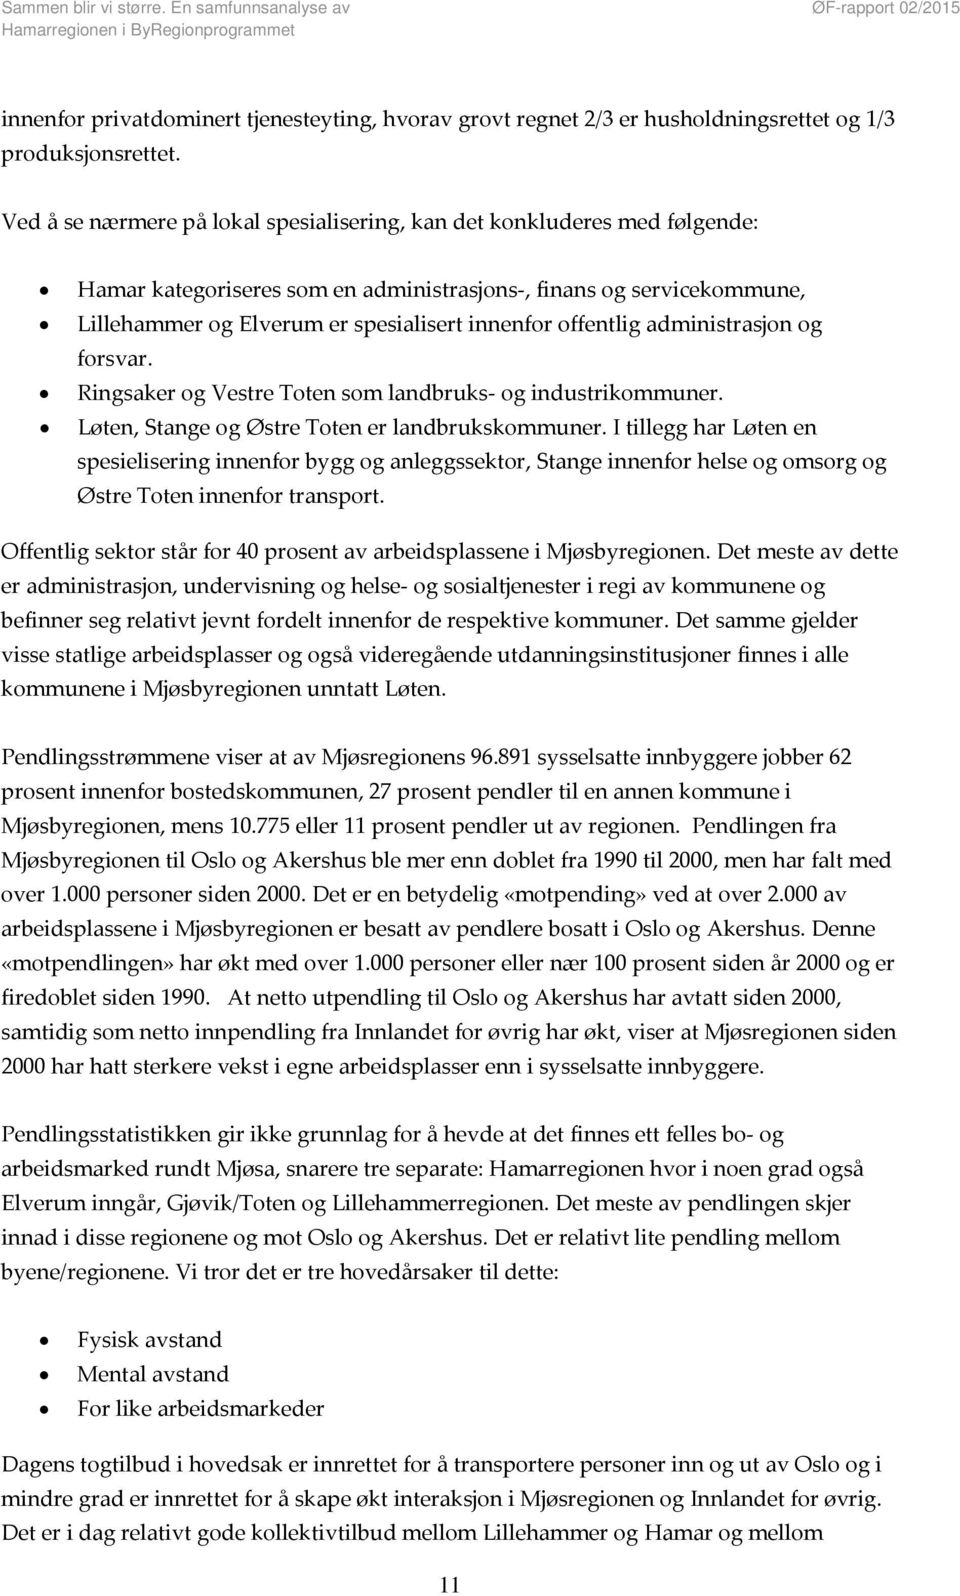 offentlig administrasjon og forsvar. Ringsaker og Vestre Toten som landbruks og industrikommuner. Løten, Stange og Østre Toten er landbrukskommuner.